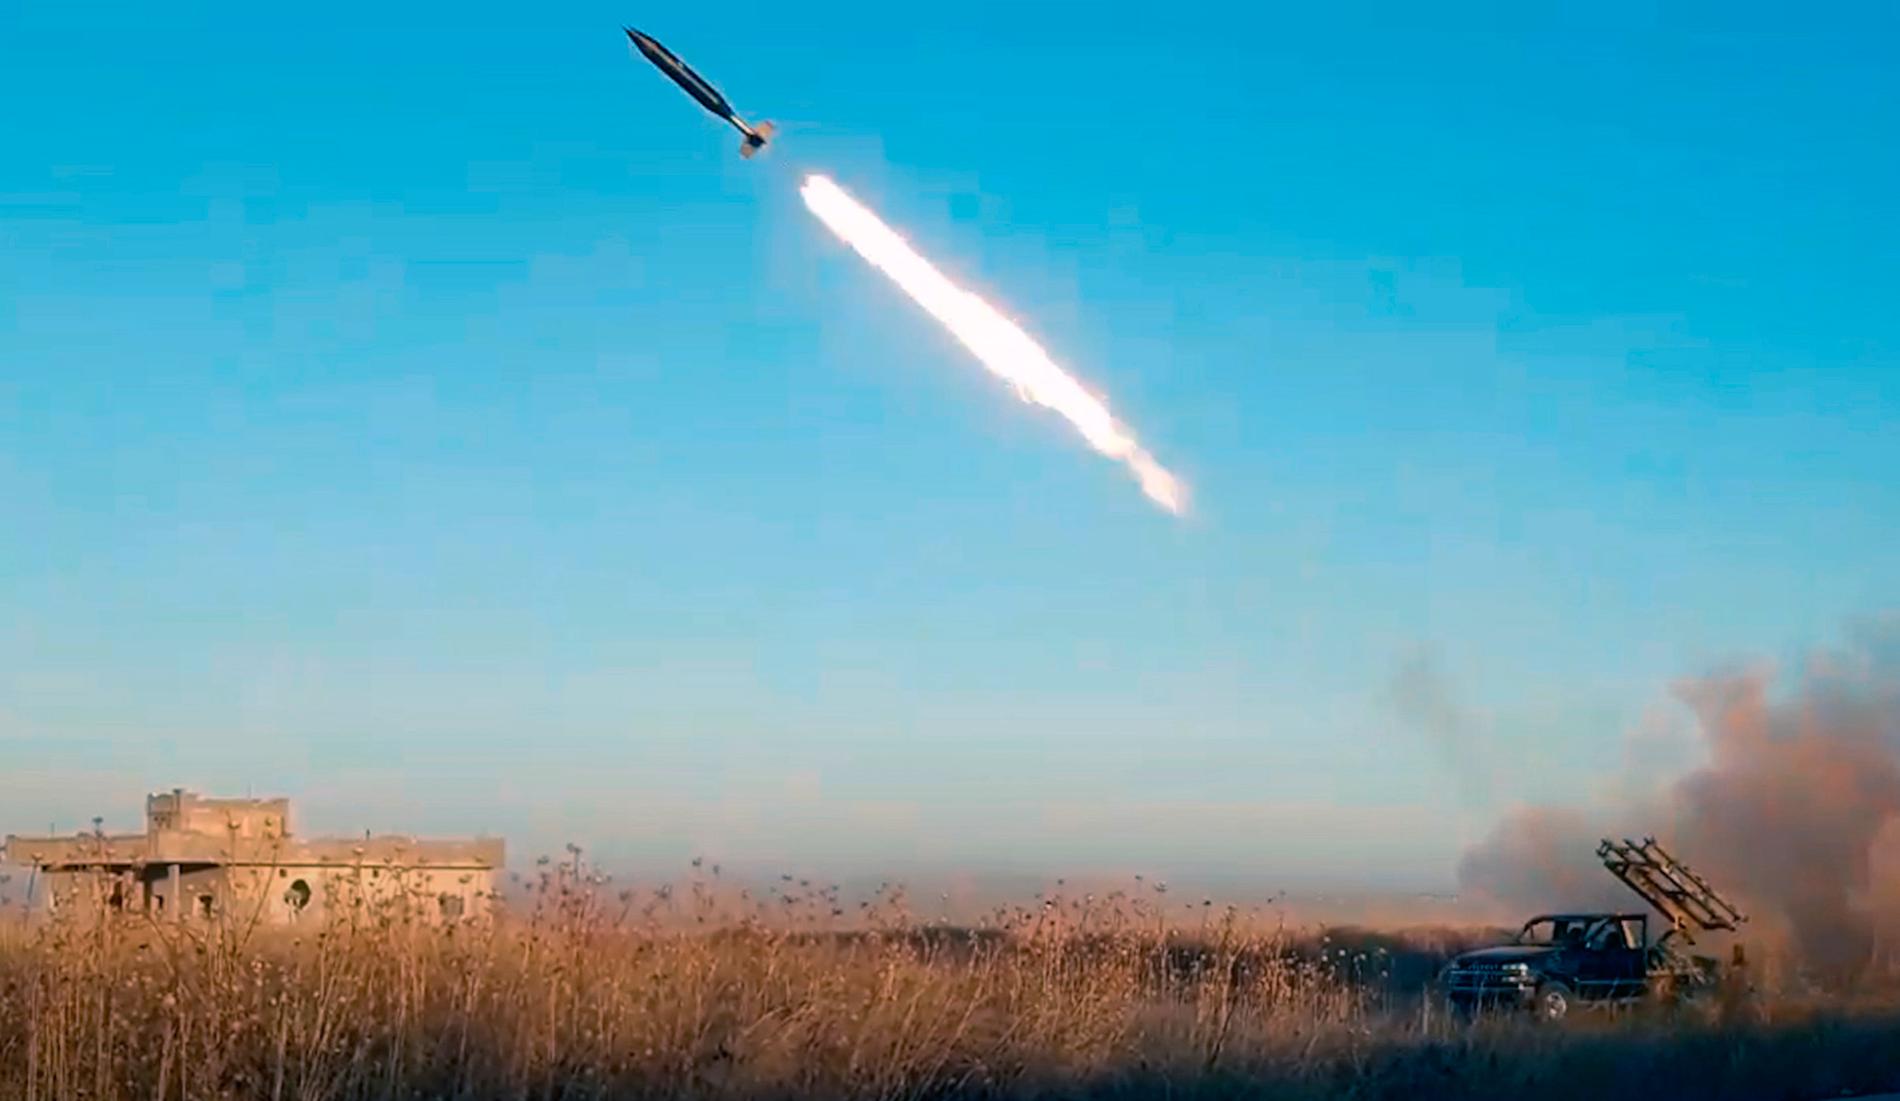 I fotot från den al-Qaidaknutna propagandaorganet Ibaa syns en raket som uppges skjutas iväg mot regeringsstyrkorna i nordvästra Syrien.